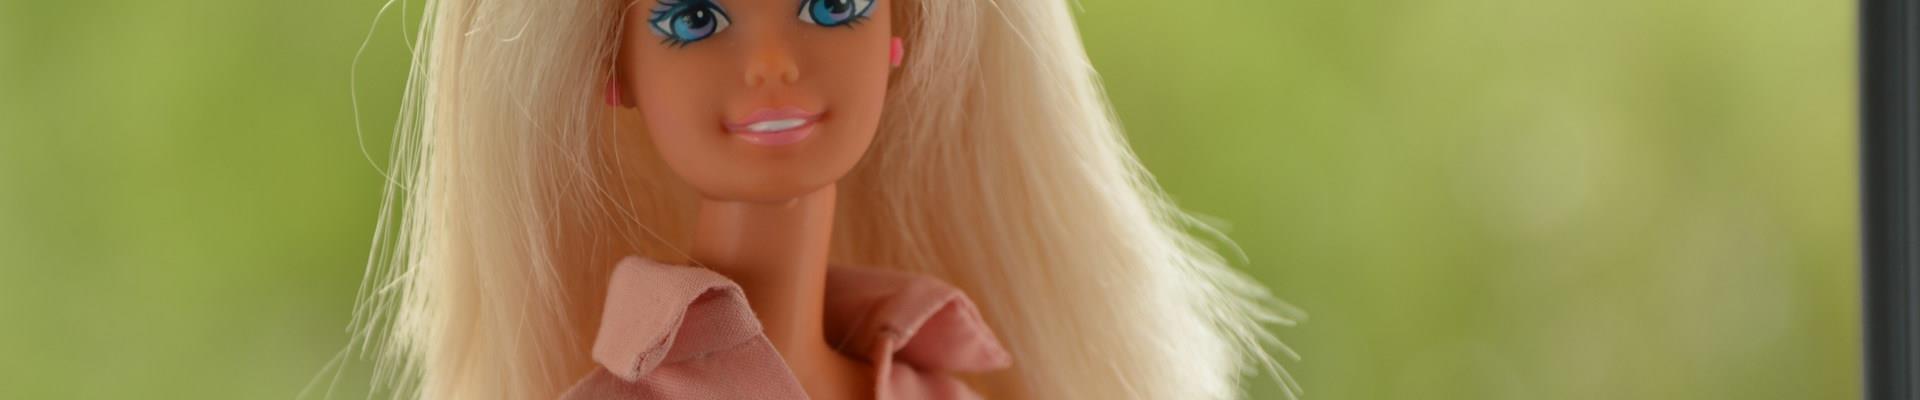 Marketing da Barbie: Chefe da Mattel comenta como as estratégias mudaram o modelo de publicidade